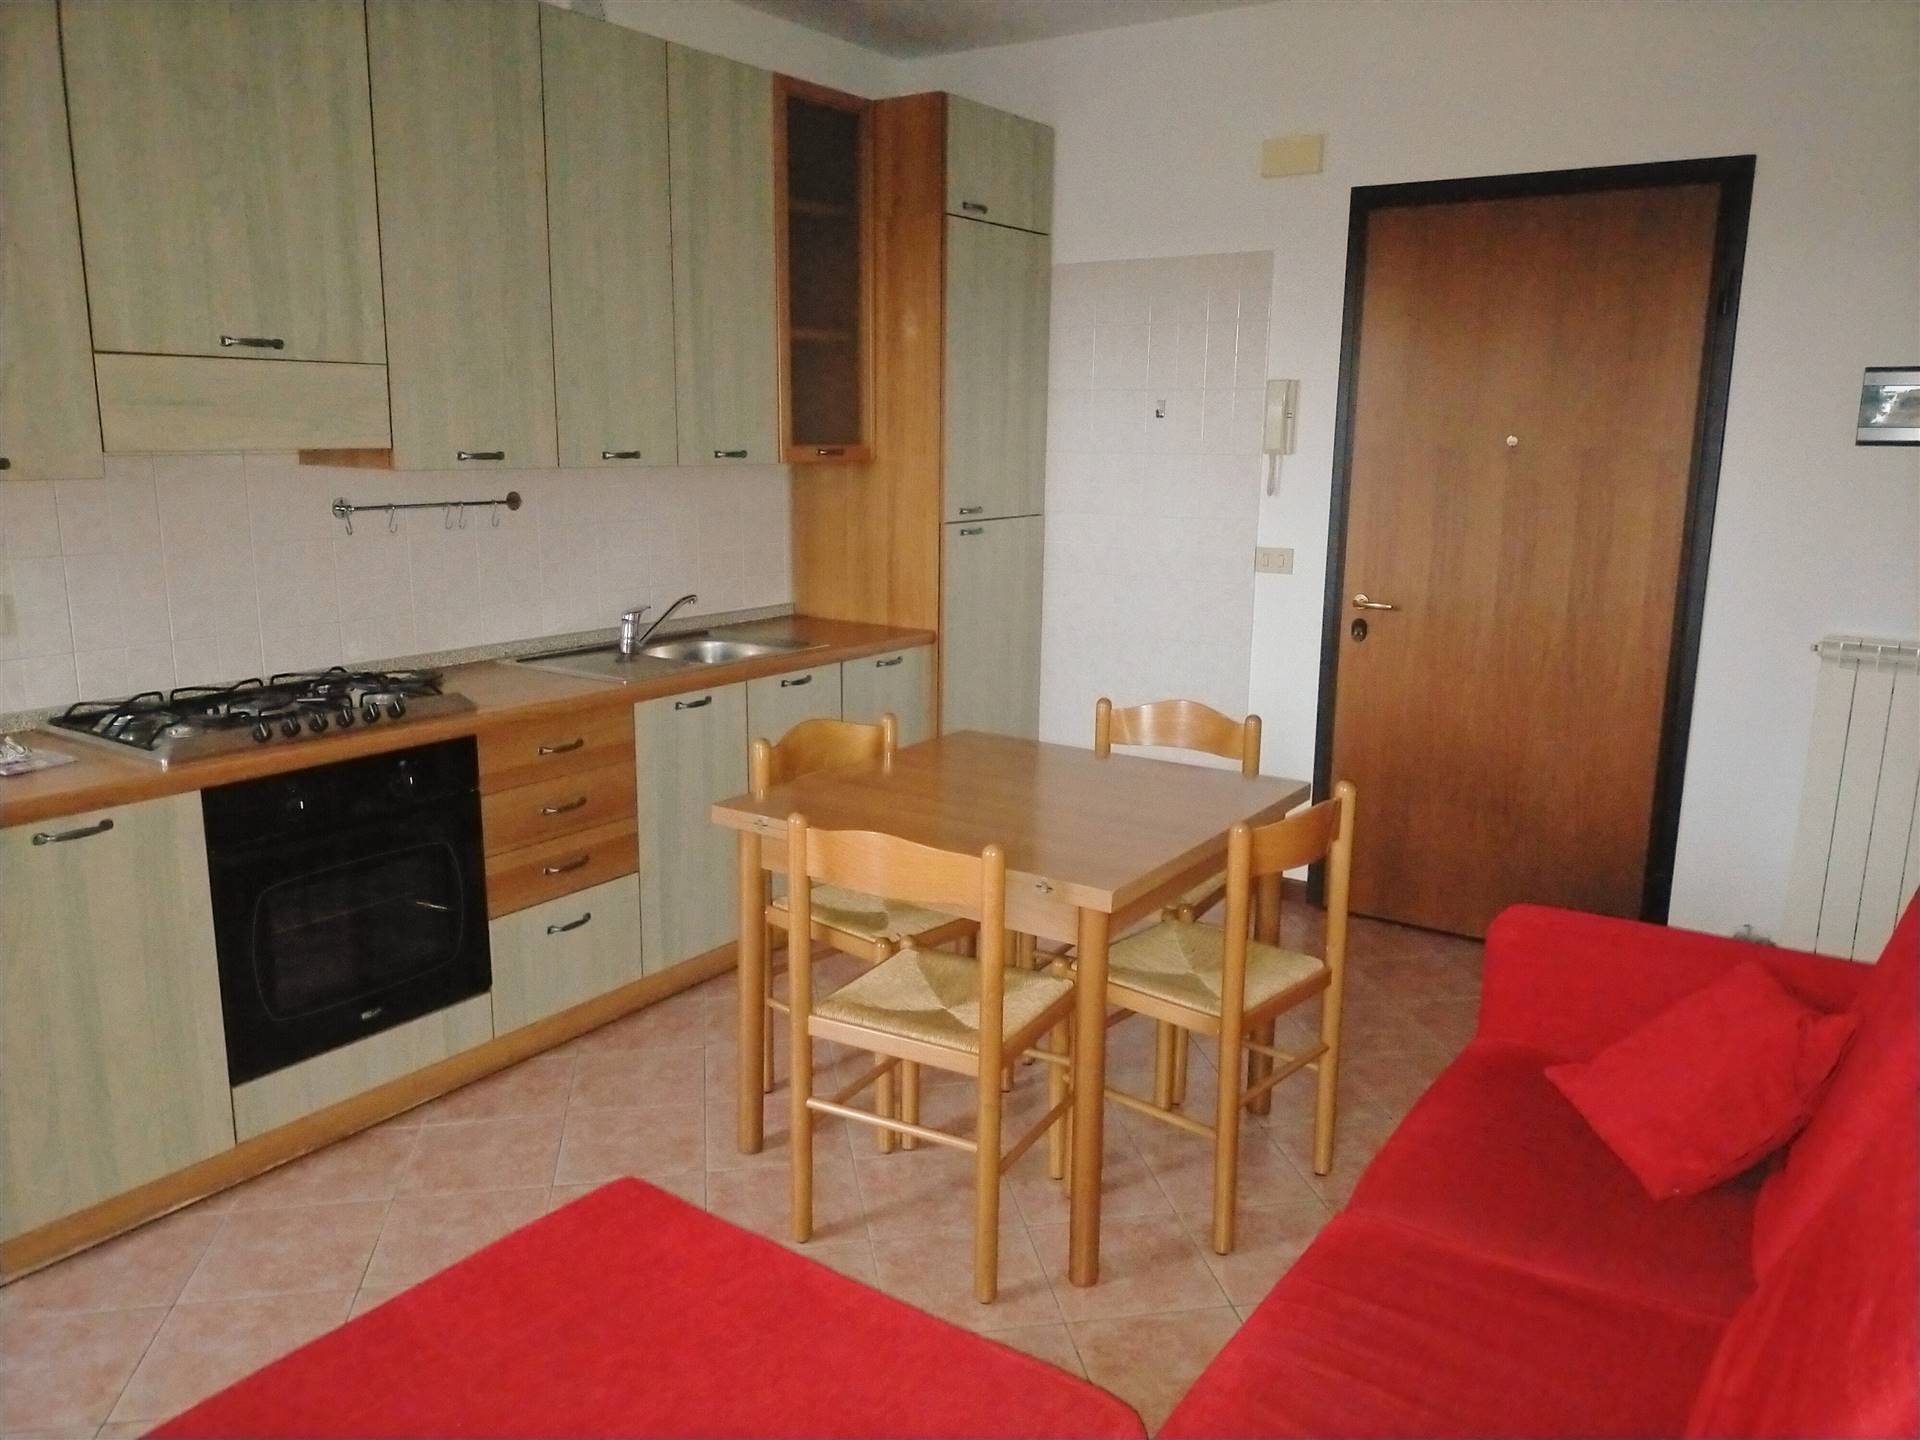 Appartamento in vendita a Villanova di Camposampiero, 3 locali, prezzo € 85.000 | PortaleAgenzieImmobiliari.it